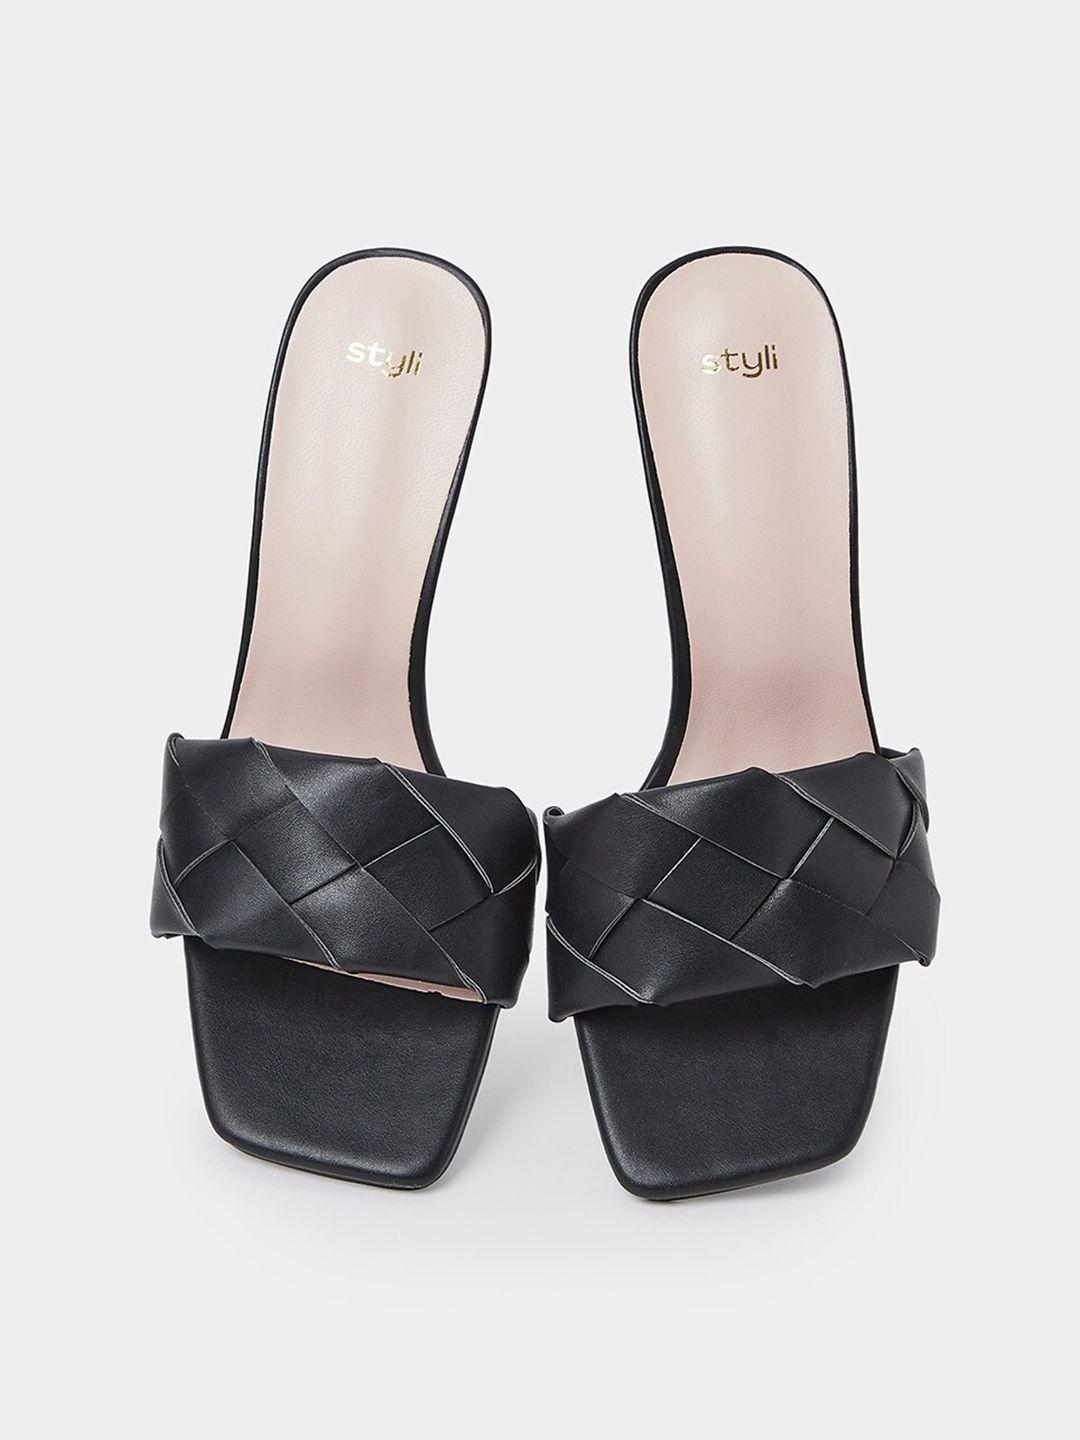 styli open toe woven design slim heels